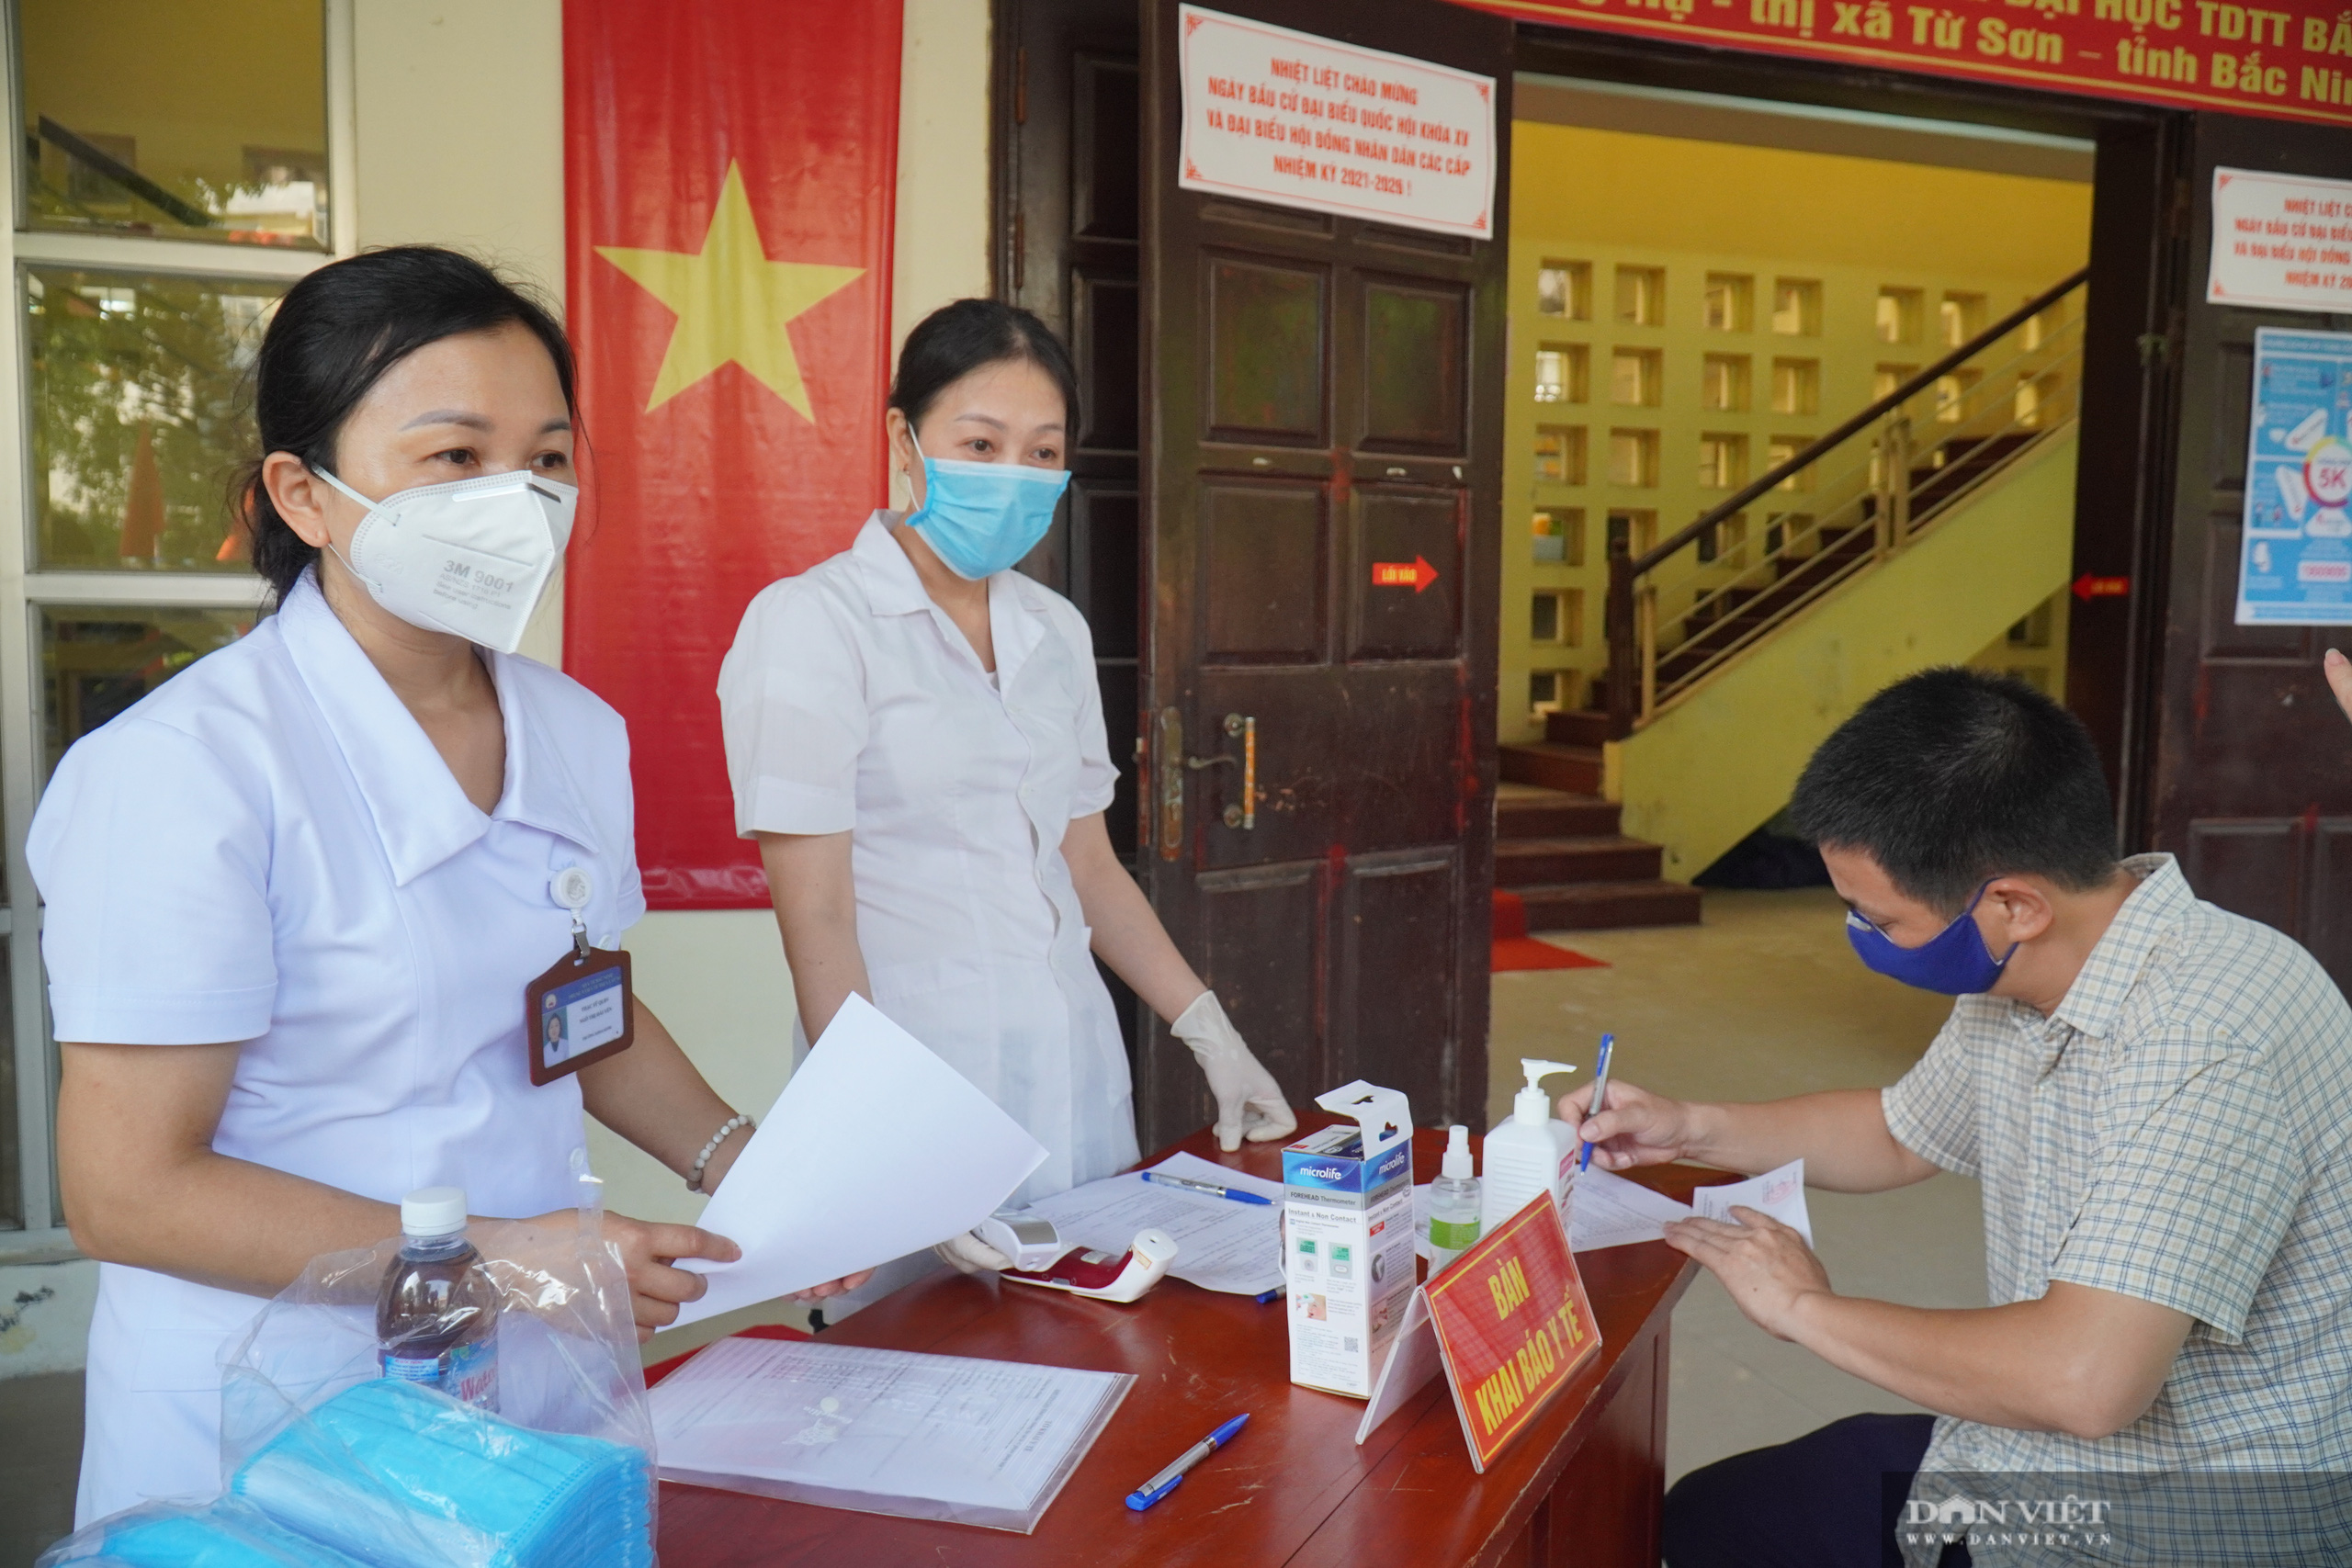 Bắc Ninh: Ngày bầu cử đặc biệt lịch sử trong khu cách ly Covid-19 - Ảnh 12.